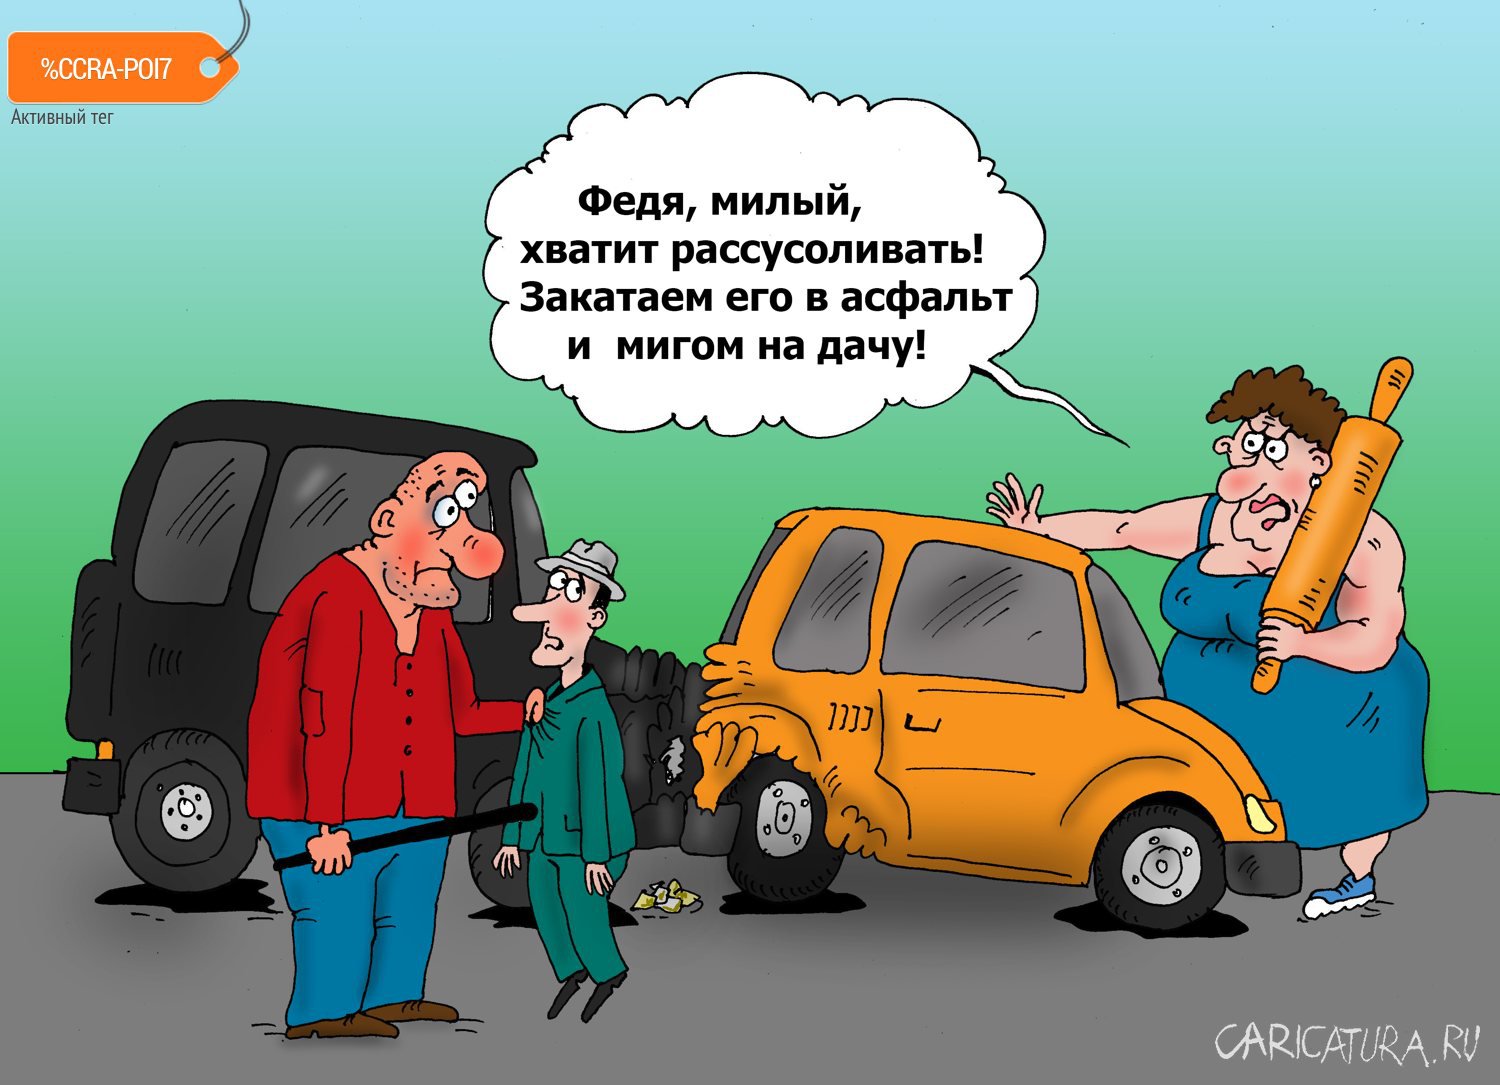 Карикатура "Авария", Валерий Тарасенко